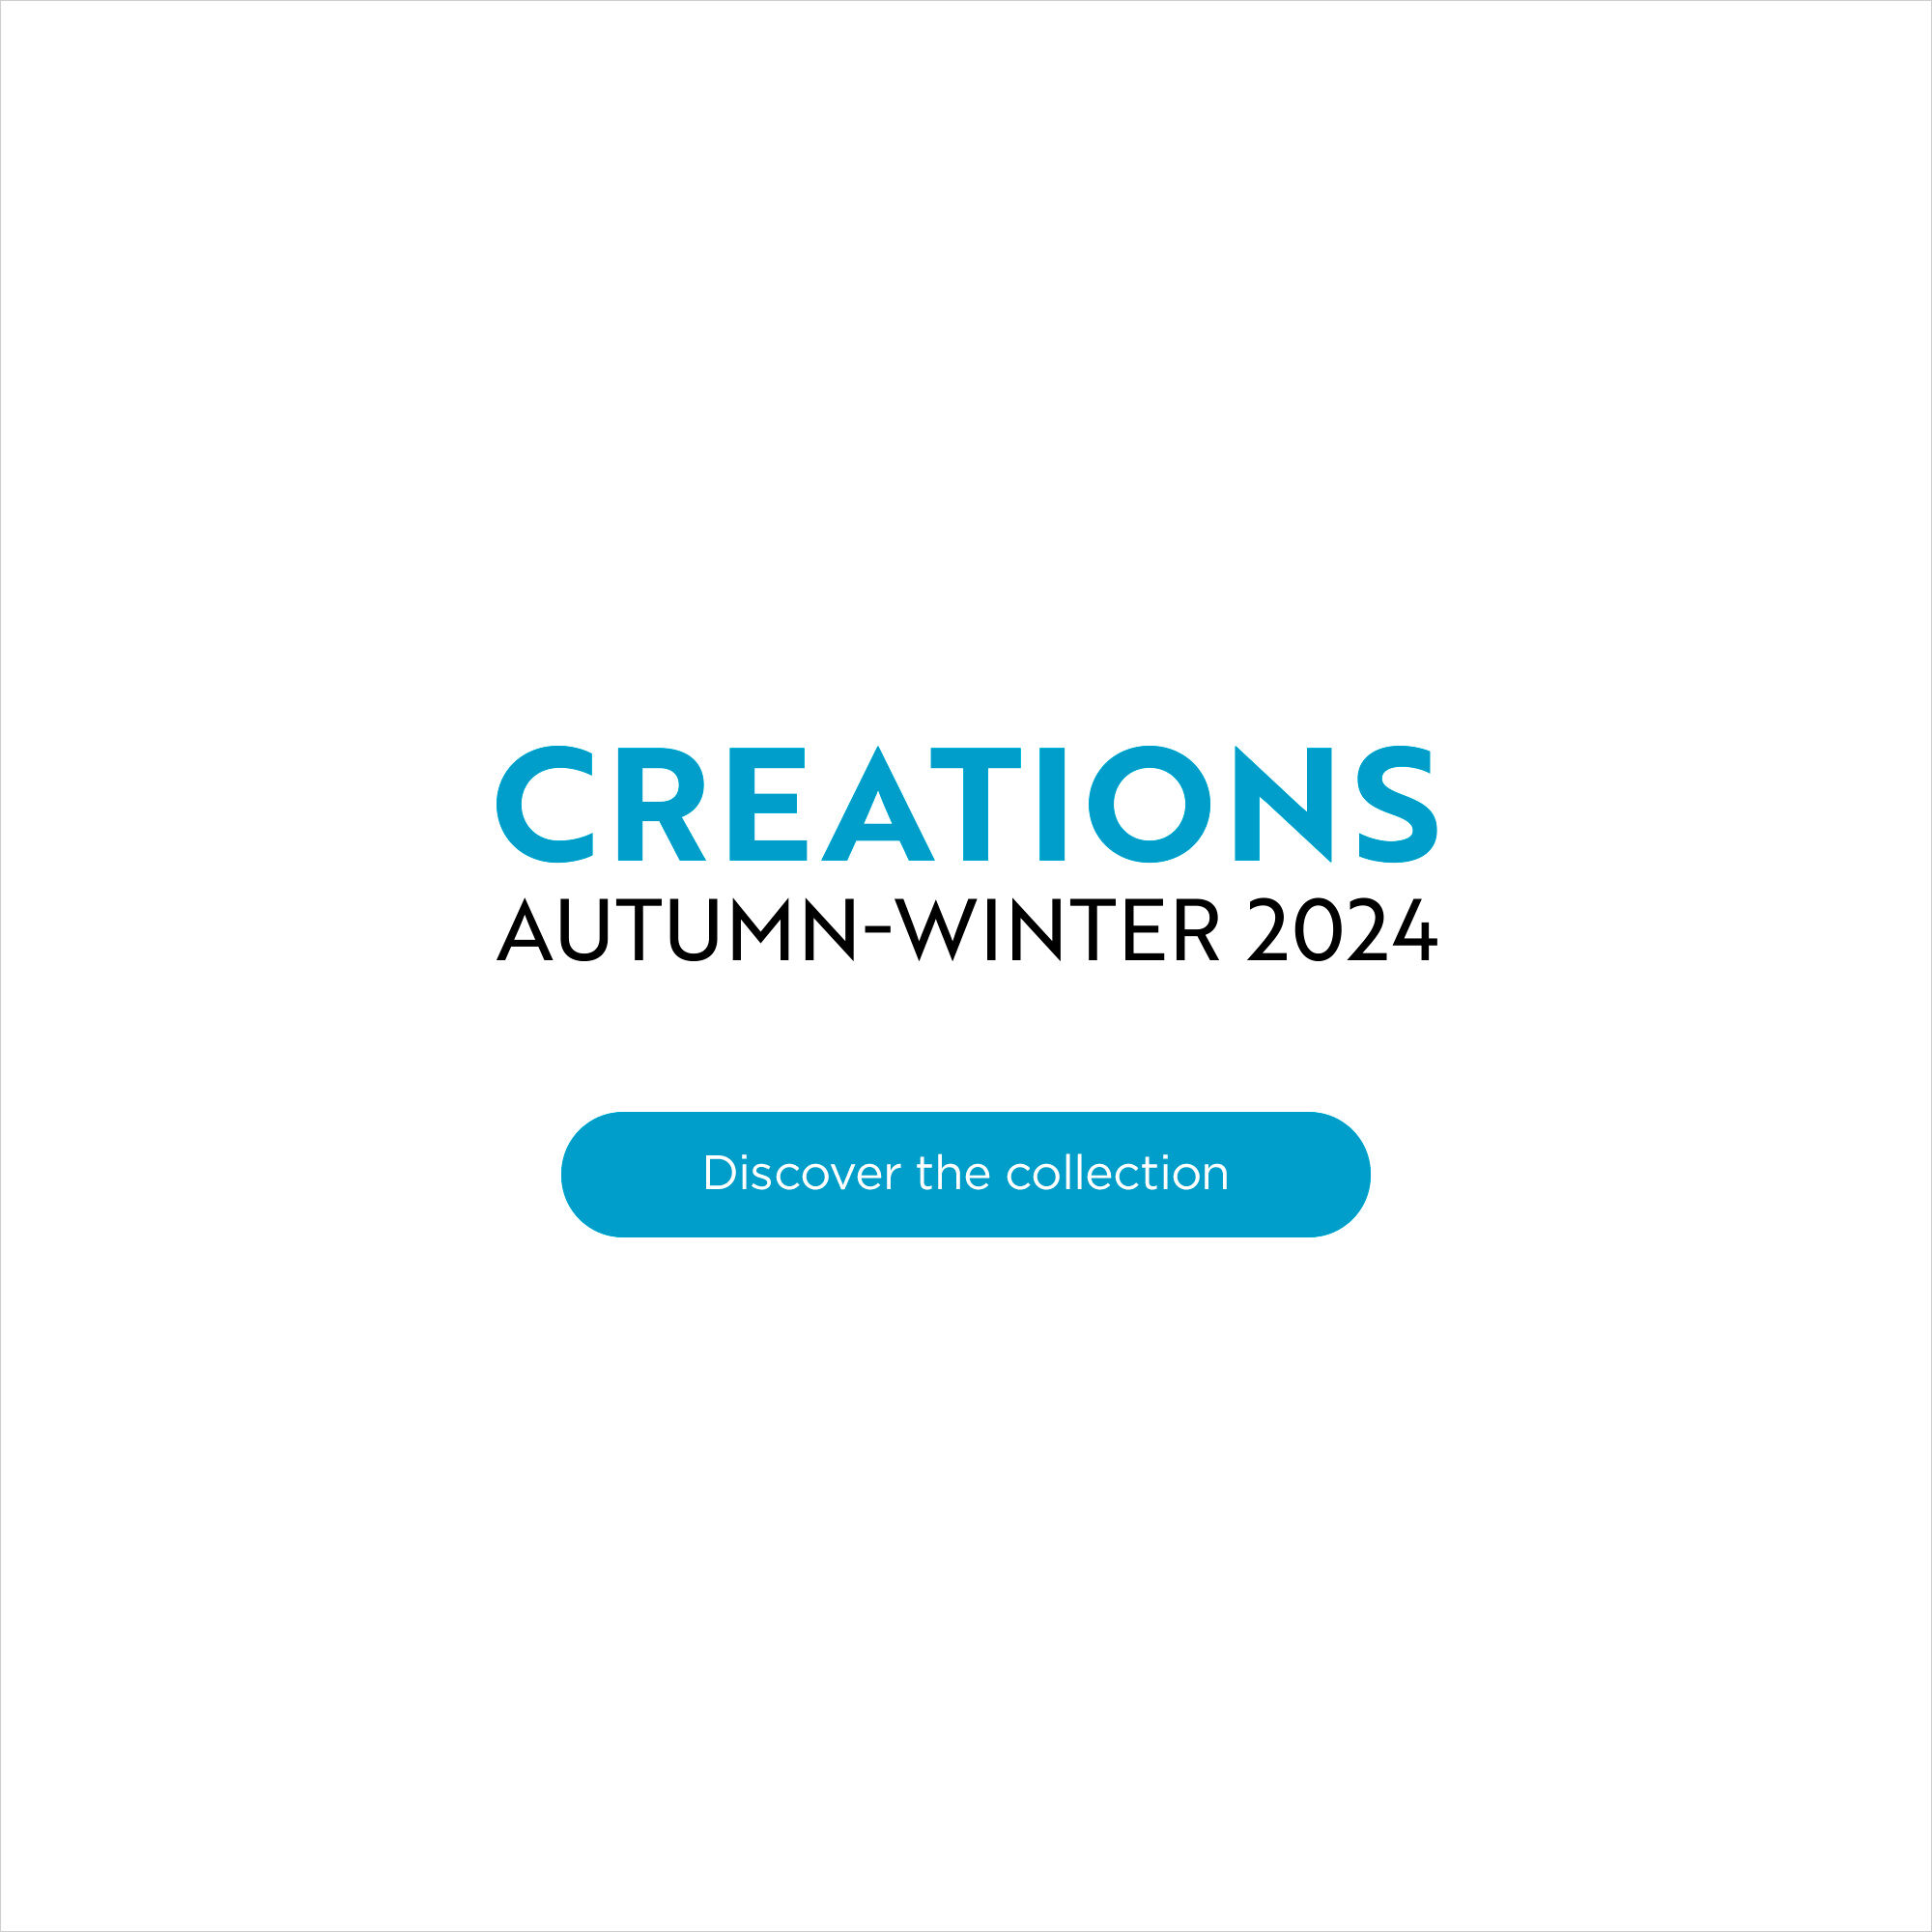 Autumn-Winter 2024 Creations